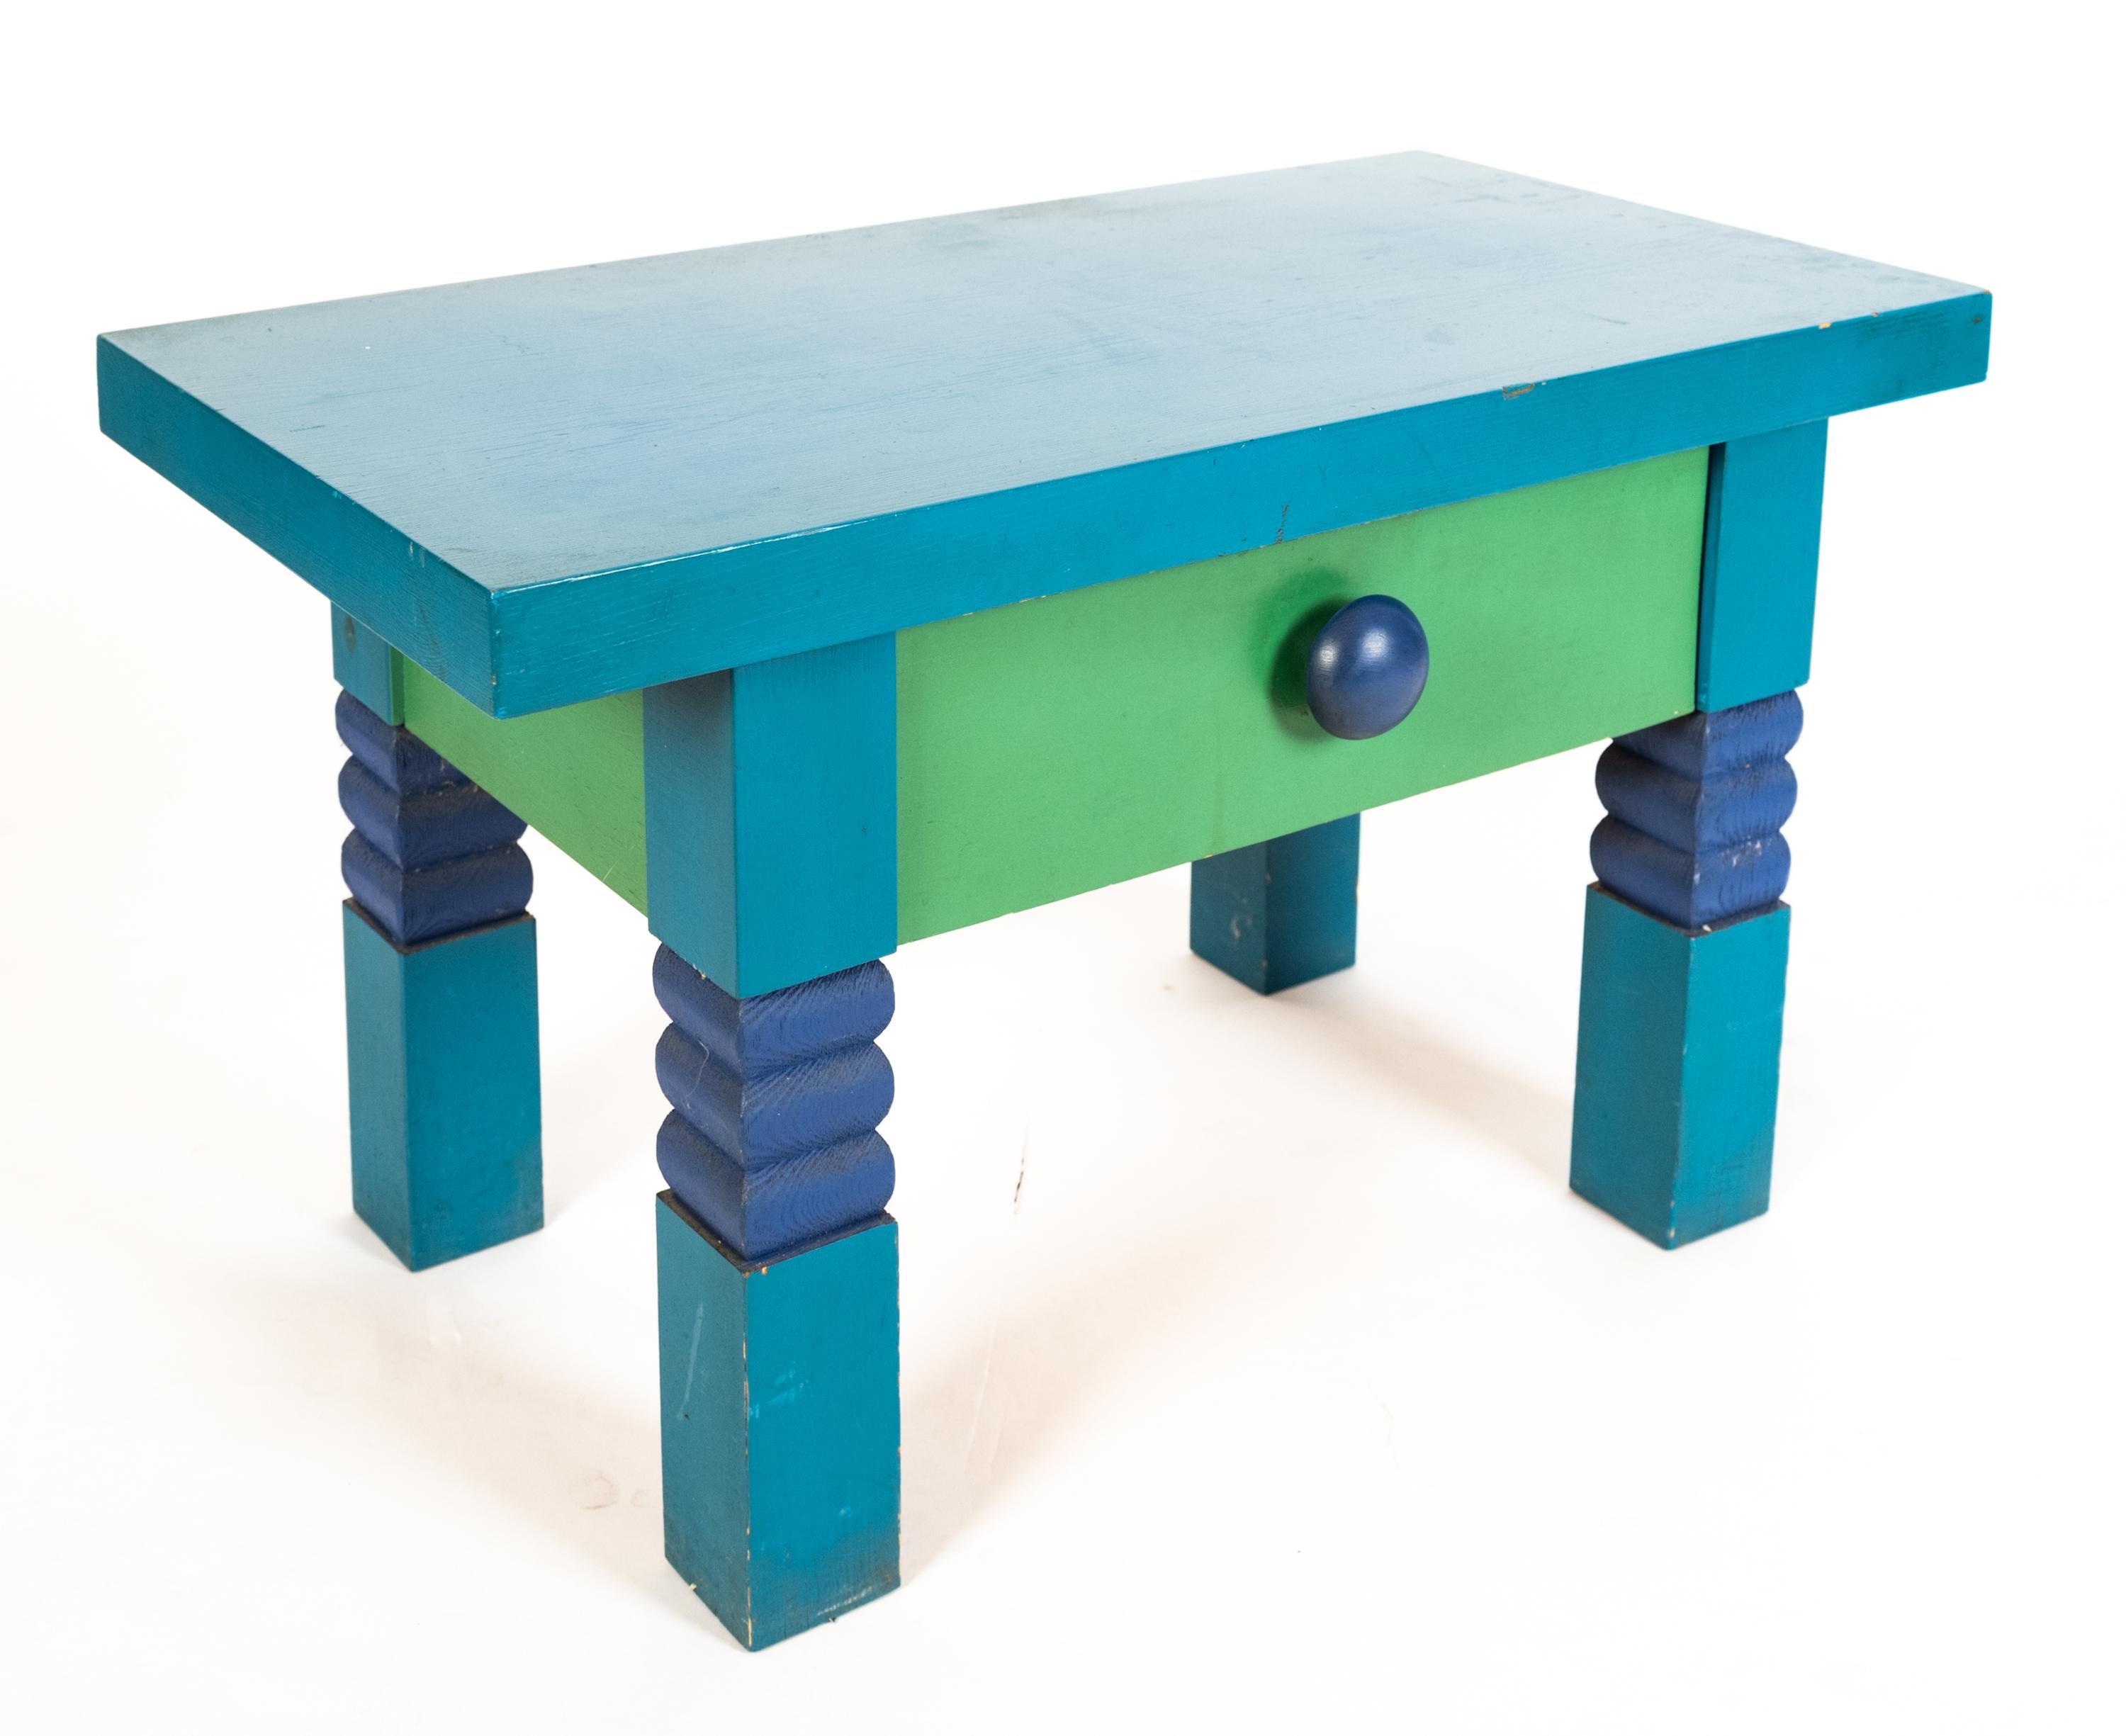 Table de salle et miroir du siècle contemporain par l'artiste suédois Erik Höglund (1932-1998) pour Artistics, Boda, 1967. Le plateau bleu repose sur quatre pieds avec des accents arrondis bleu foncé sculptés. Comprend un tiroir vert avec un bouton